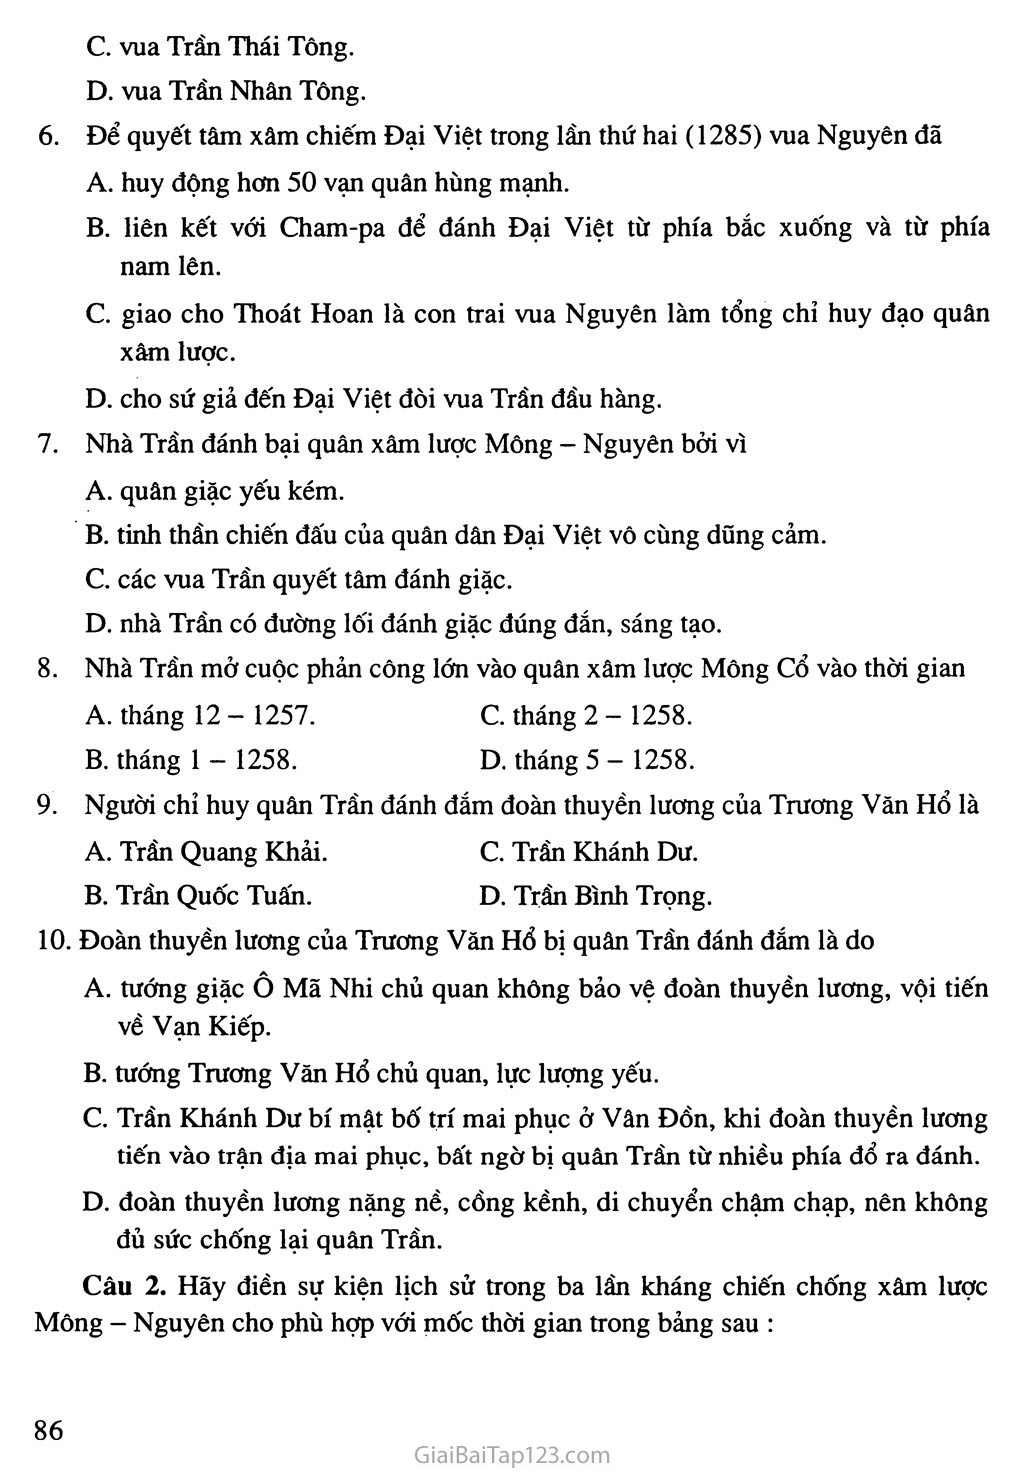 Bài 14: Ba lần kháng chiến chống quân xâm lược Mông - Nguyên (thế kỉ XIII) trang 8